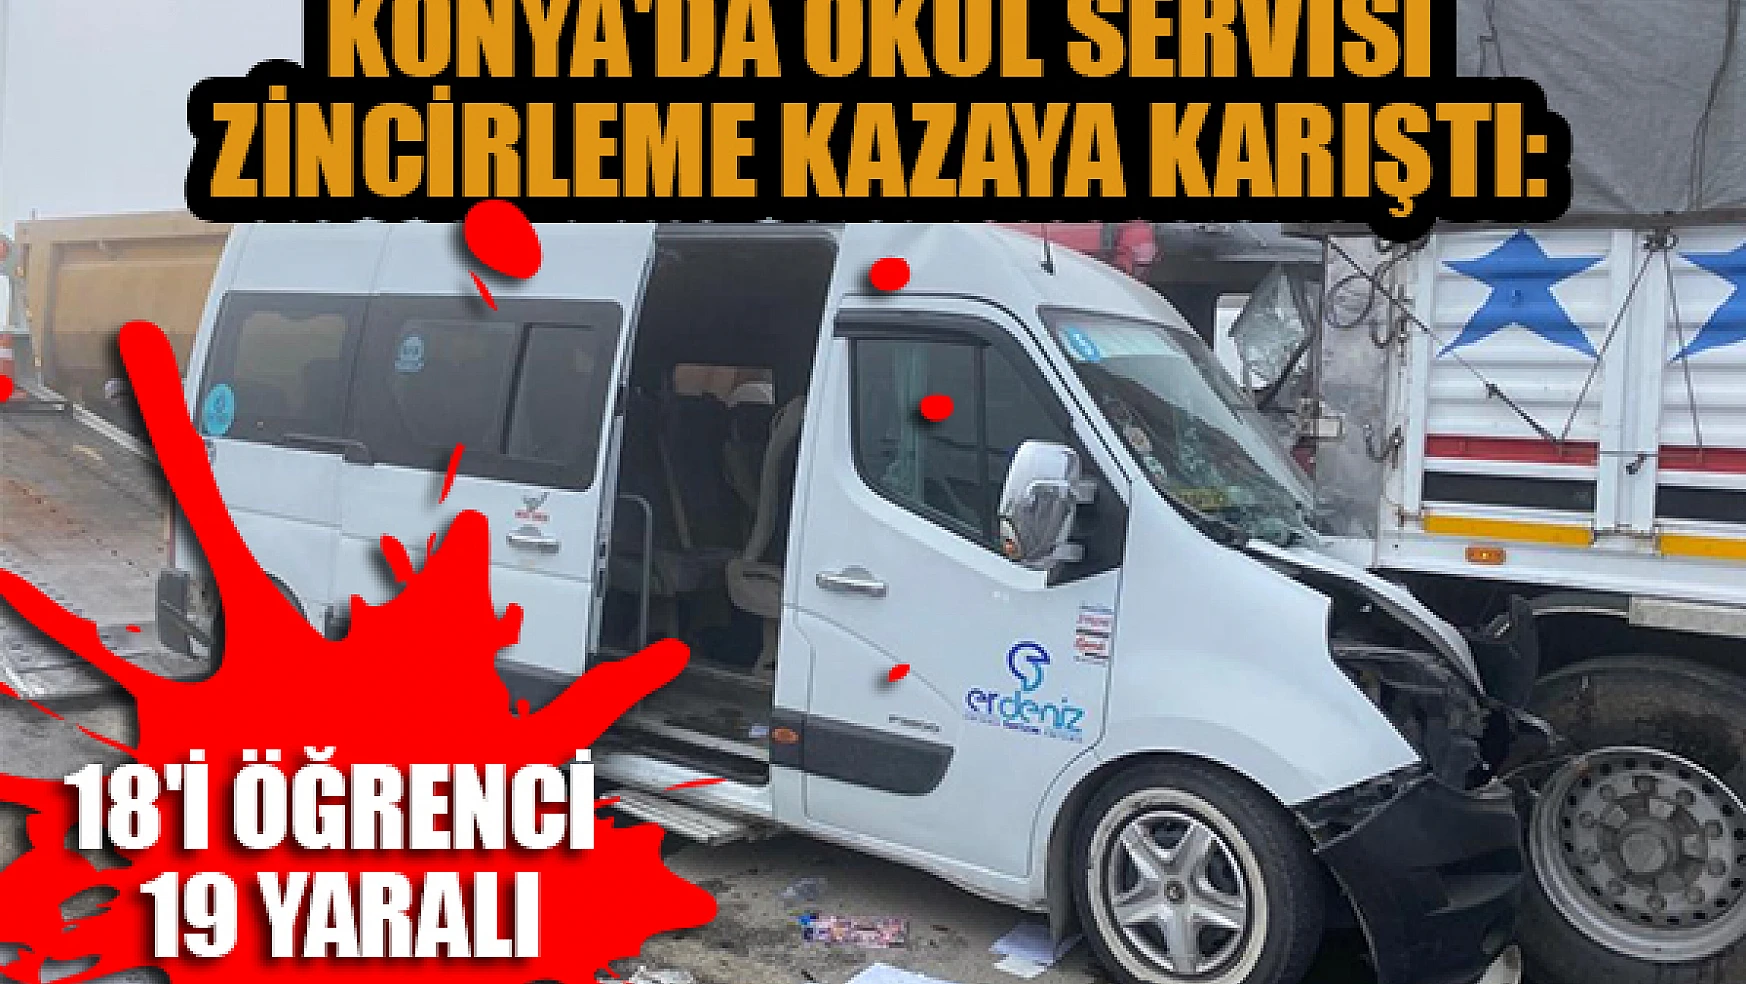 Konya'da okul servisi zincirleme kazaya karıştı: 18'i öğrenci 19 yaralı